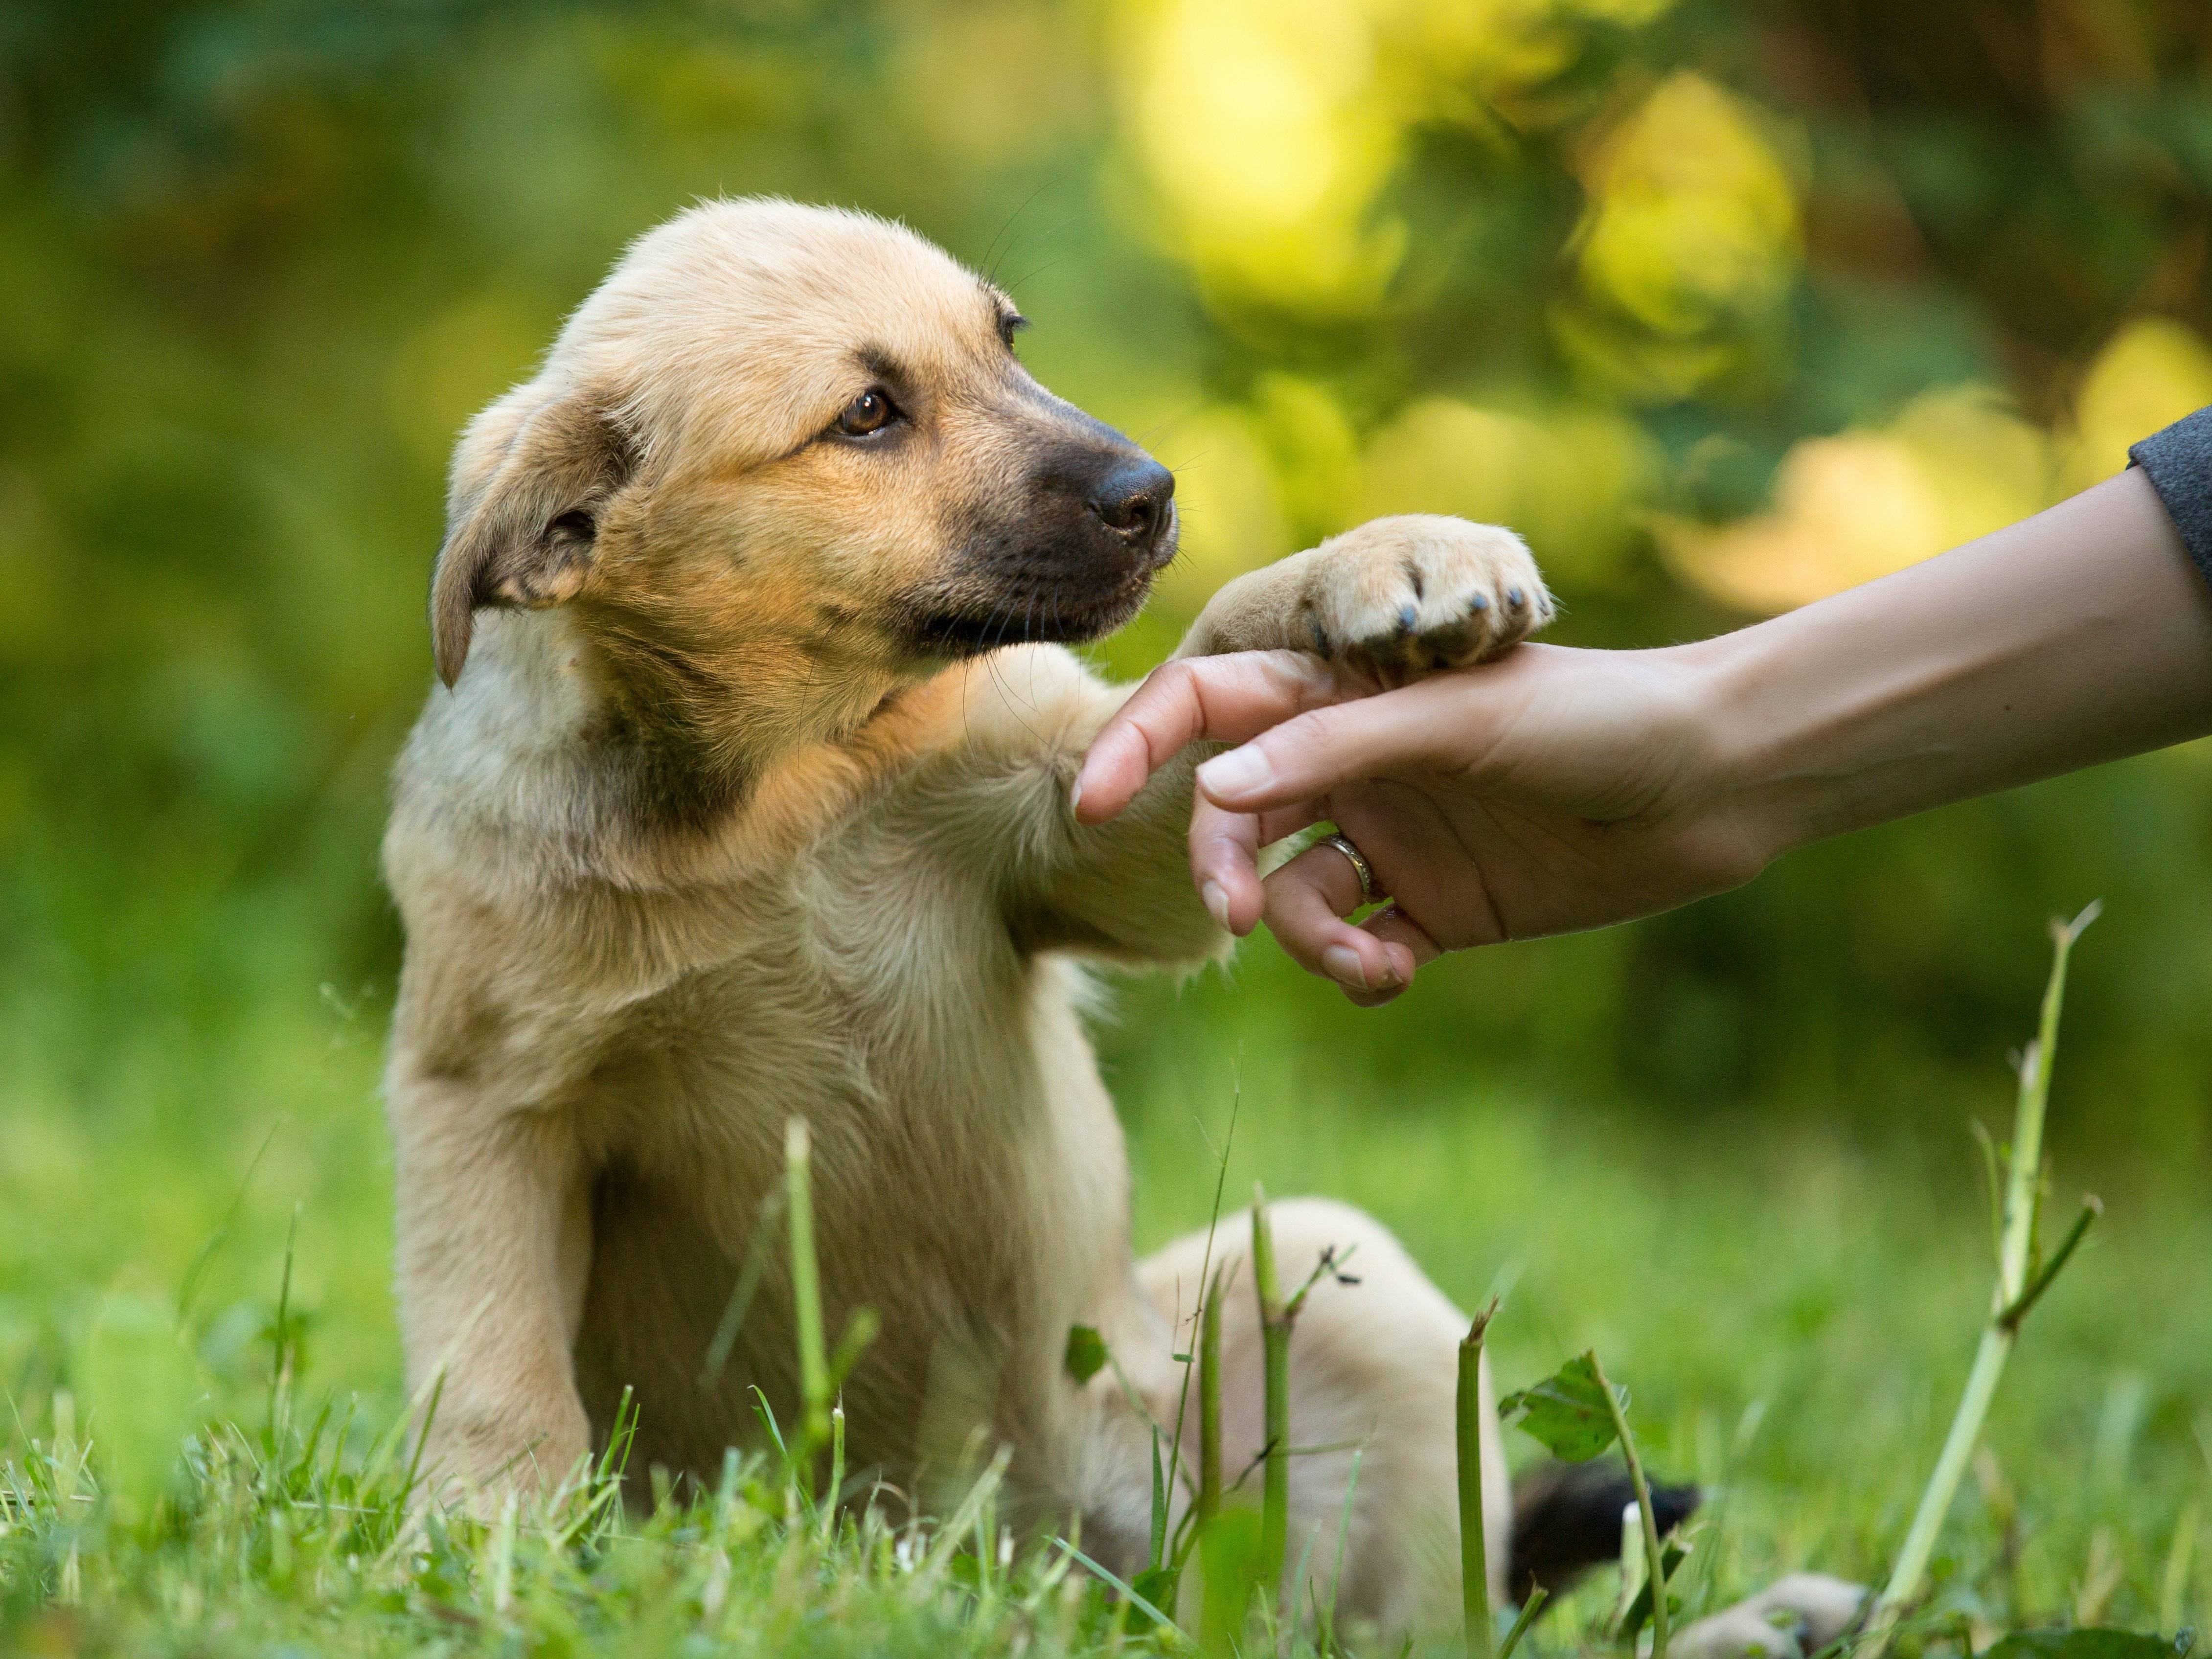 El 88% dels amos|propietaris de gossos farà un regal a la seva mascota aquest Nadal